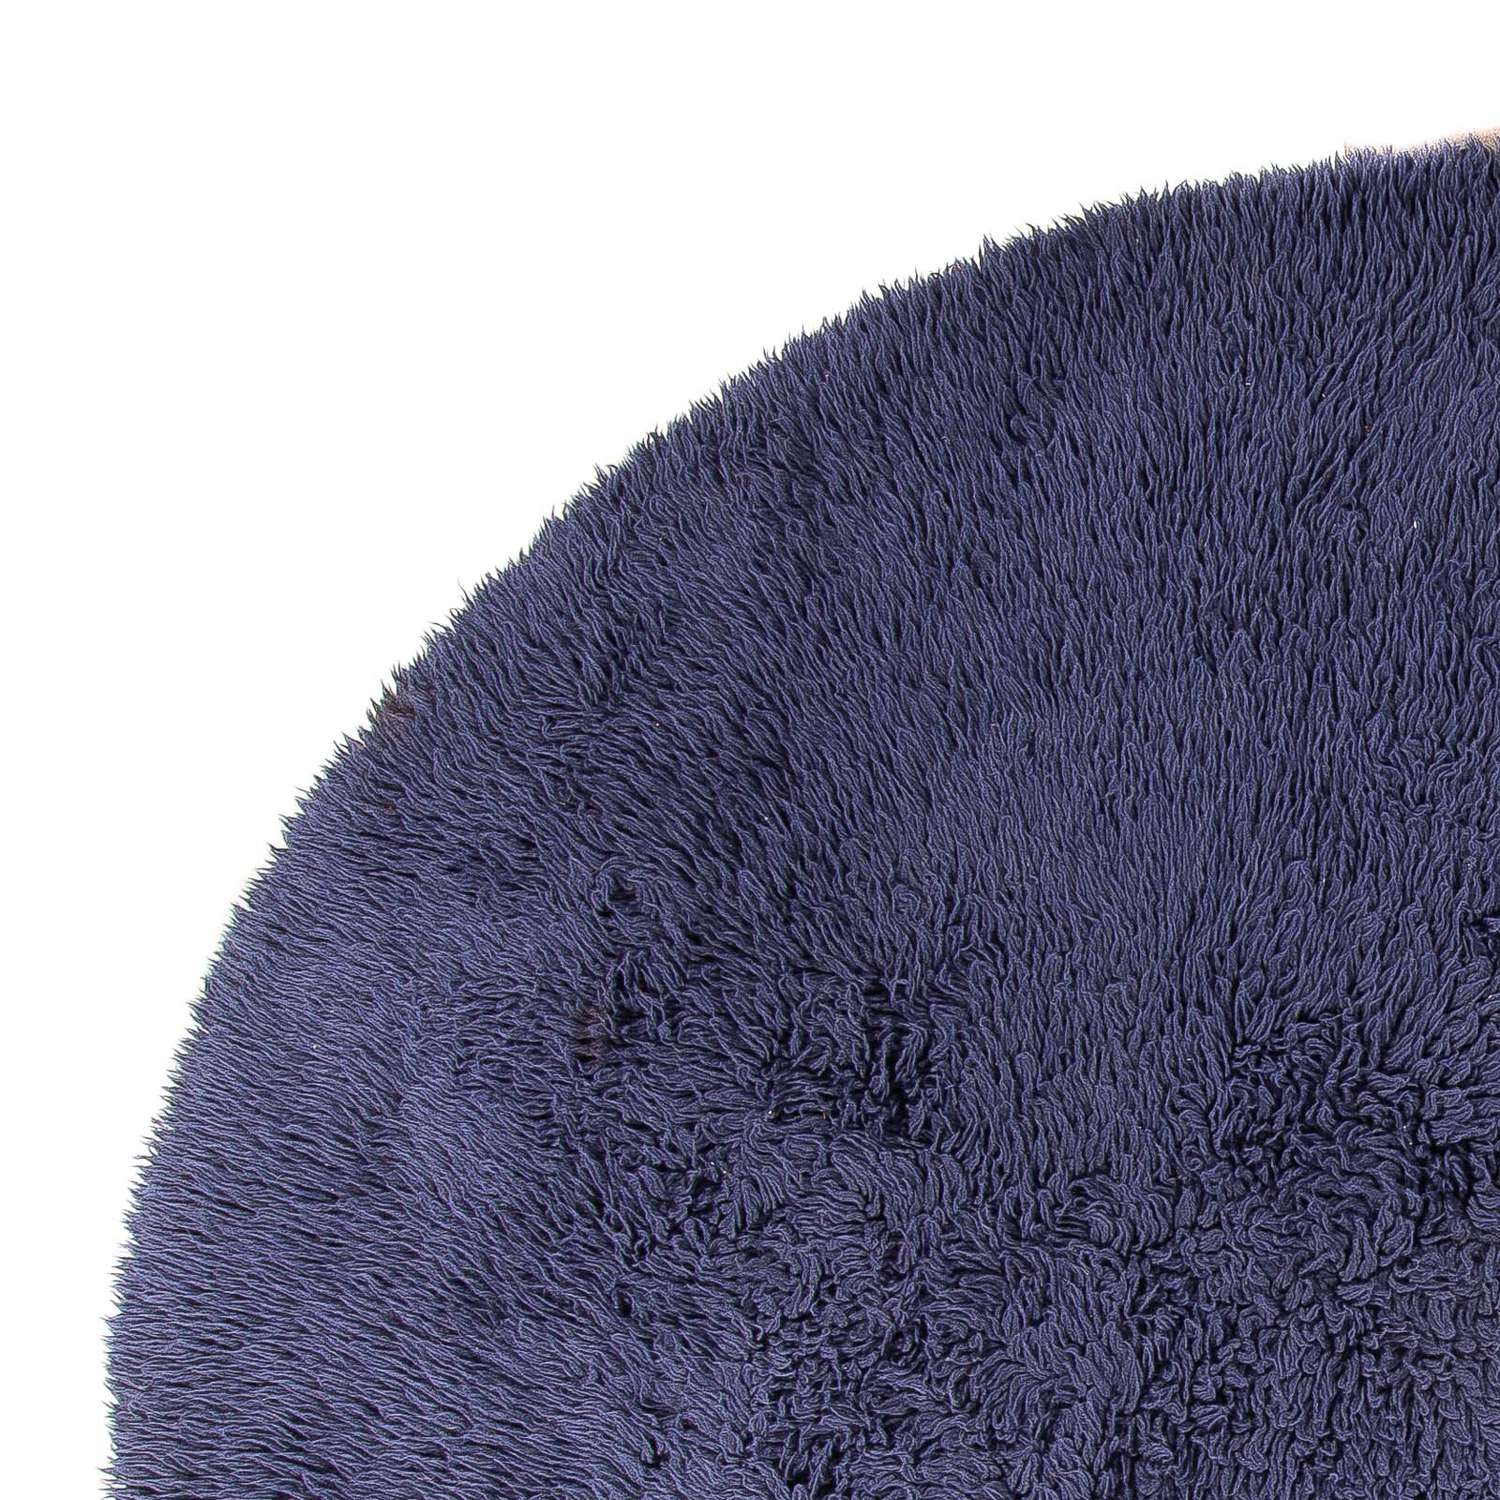 Hög luggmatta runt  - 261 x 261 cm - mörkblå